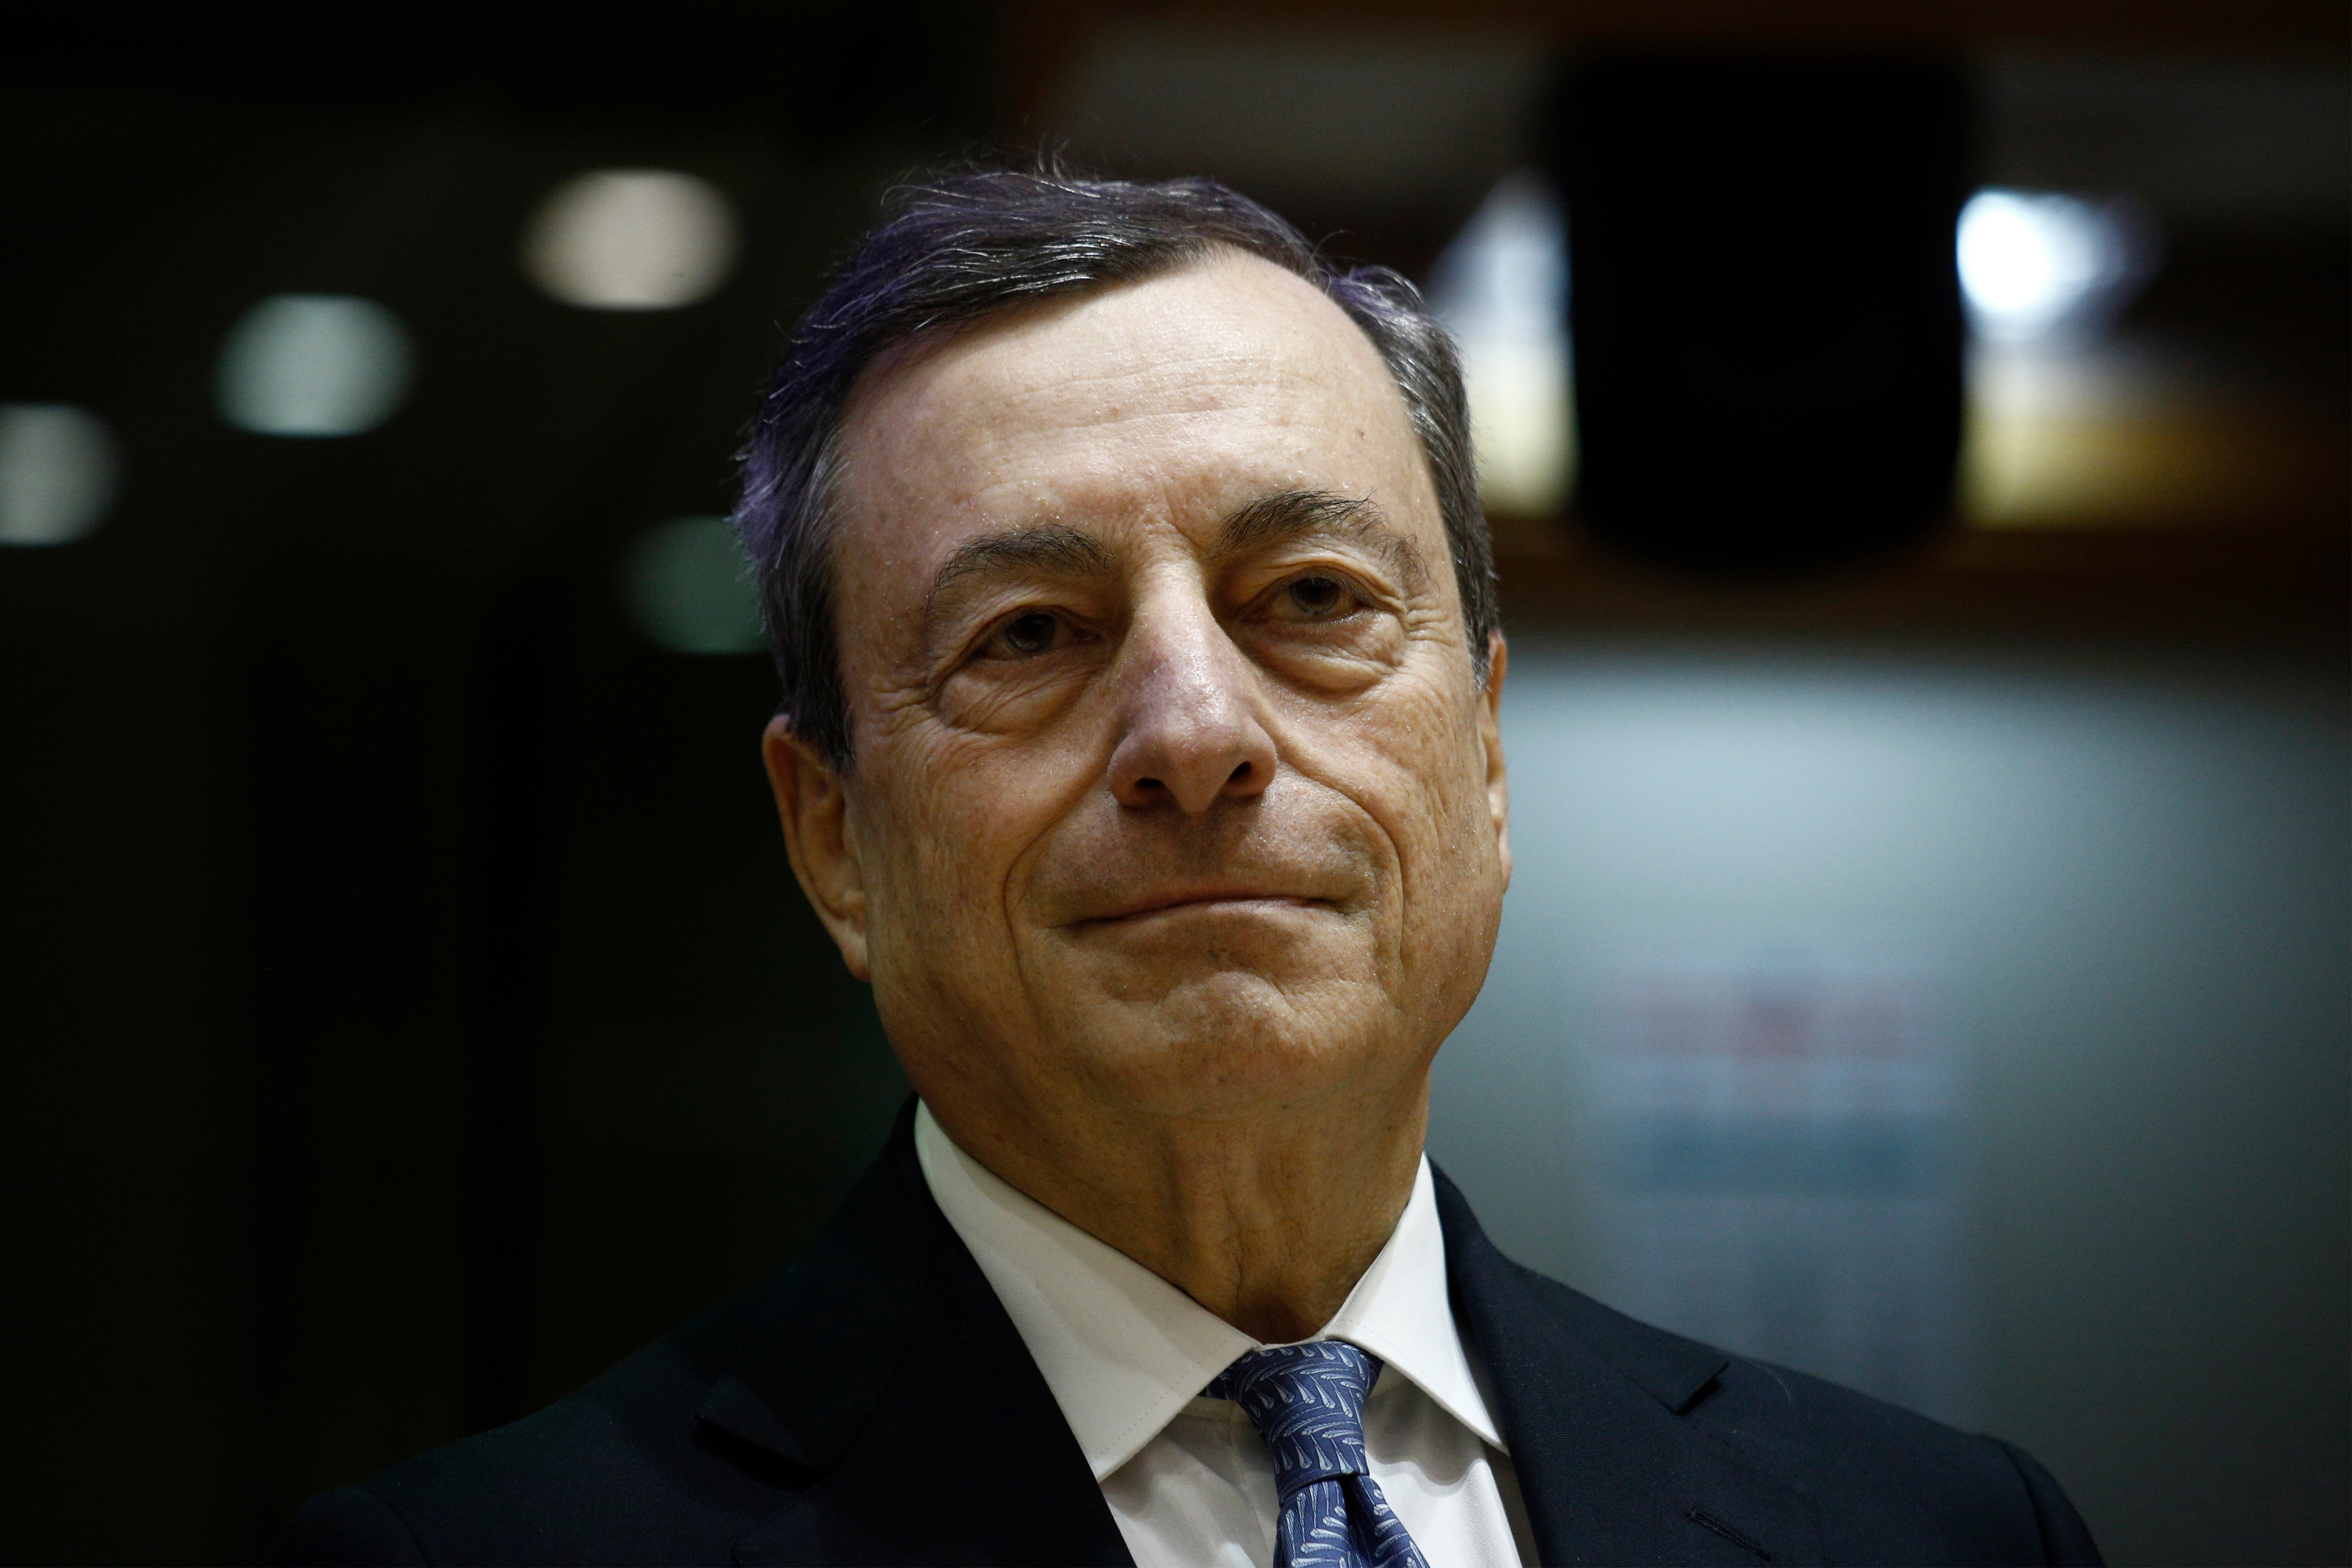 Mario Draghi verabschiedet sich mit Niedrigzinsausblick